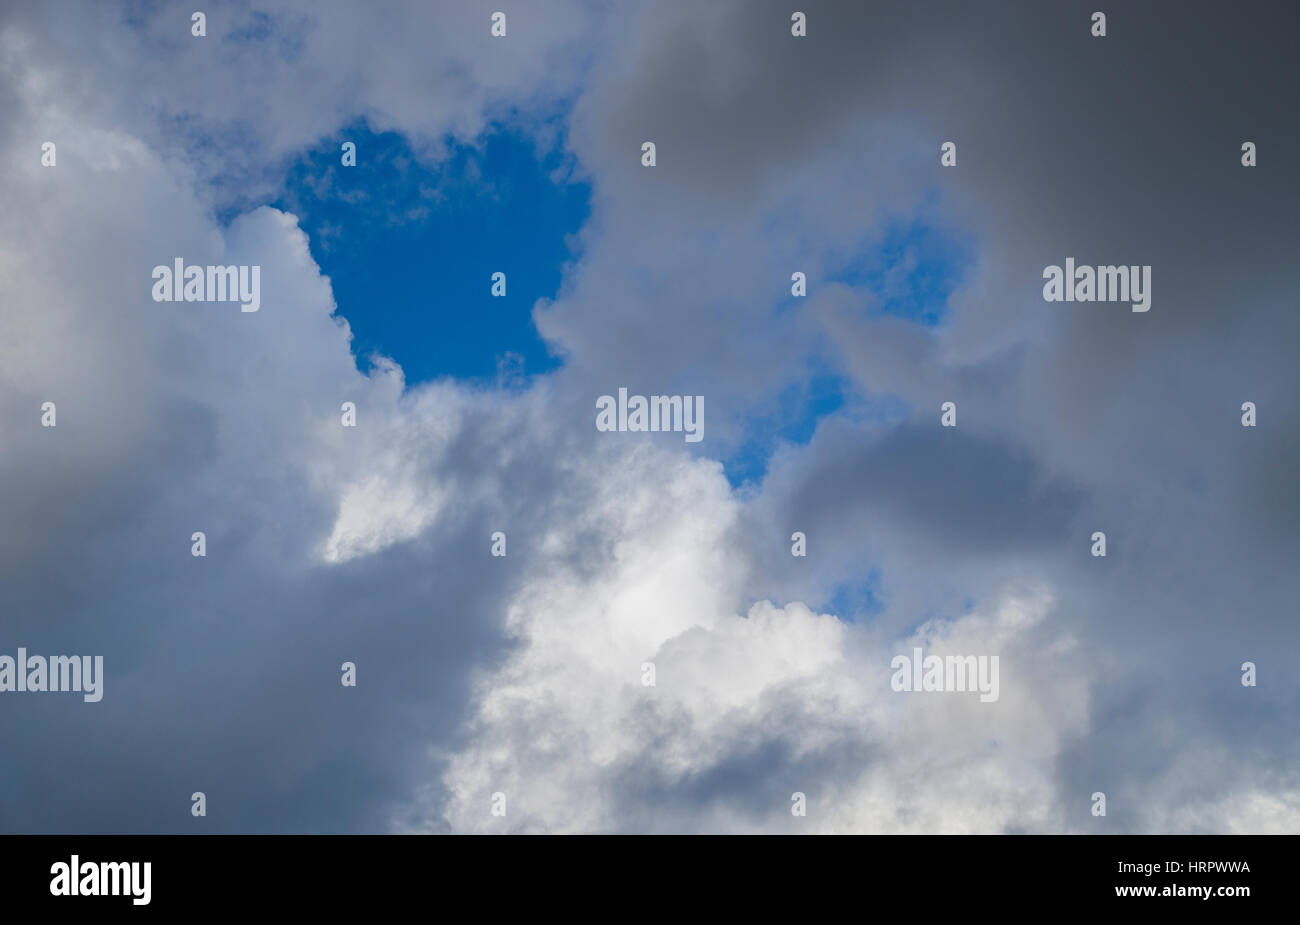 cloudscape,storm clouds against a blue sky Stock Photo